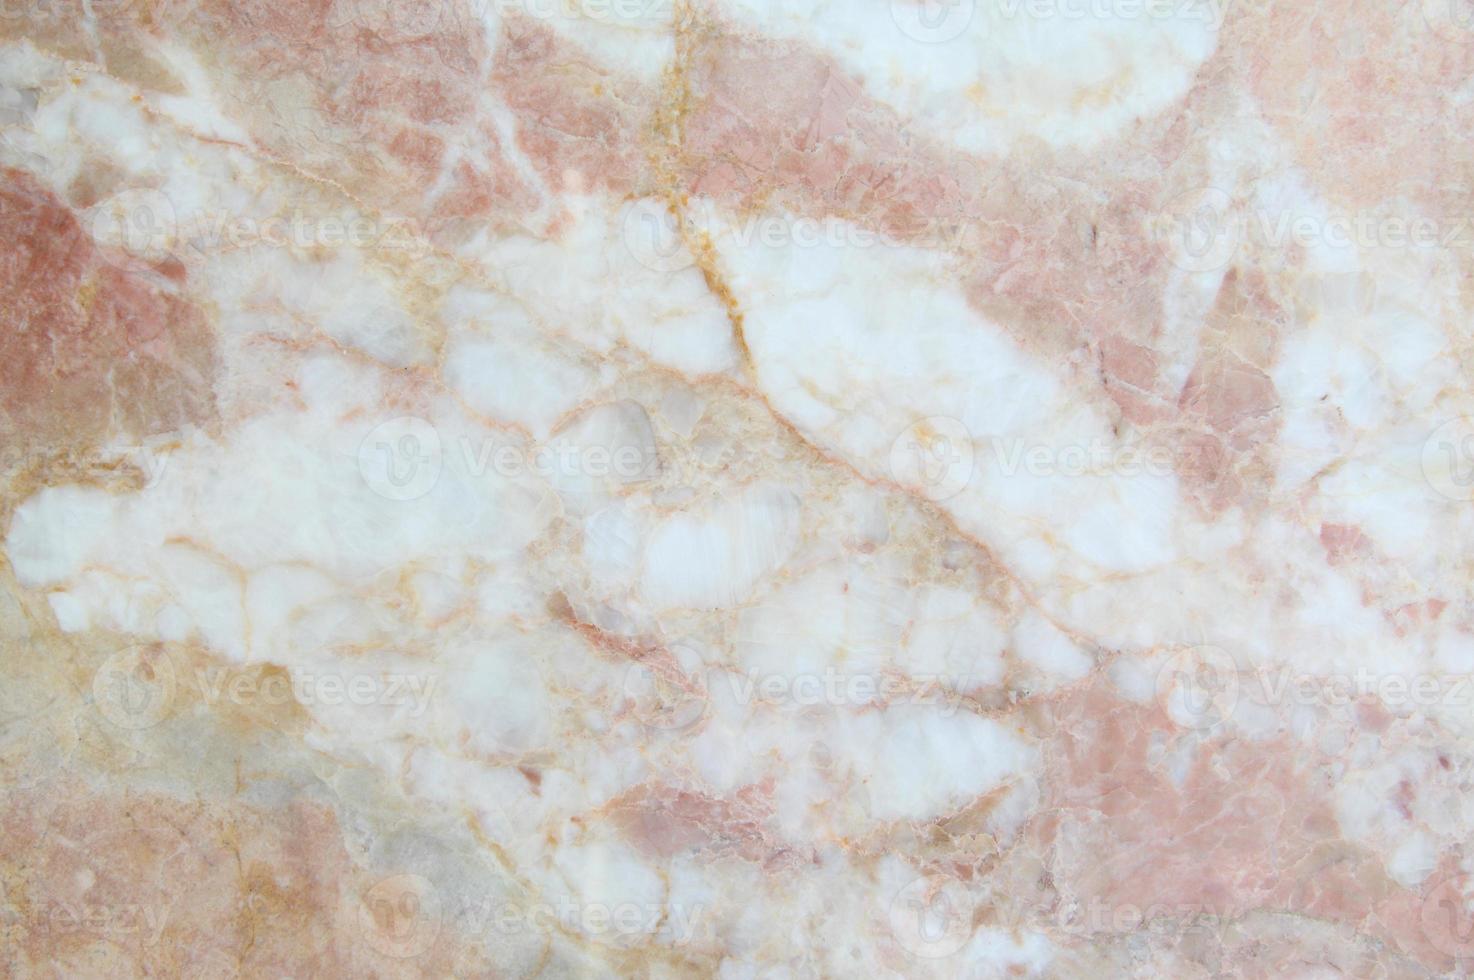 carreaux de marbre texture mur fond de marbre photo